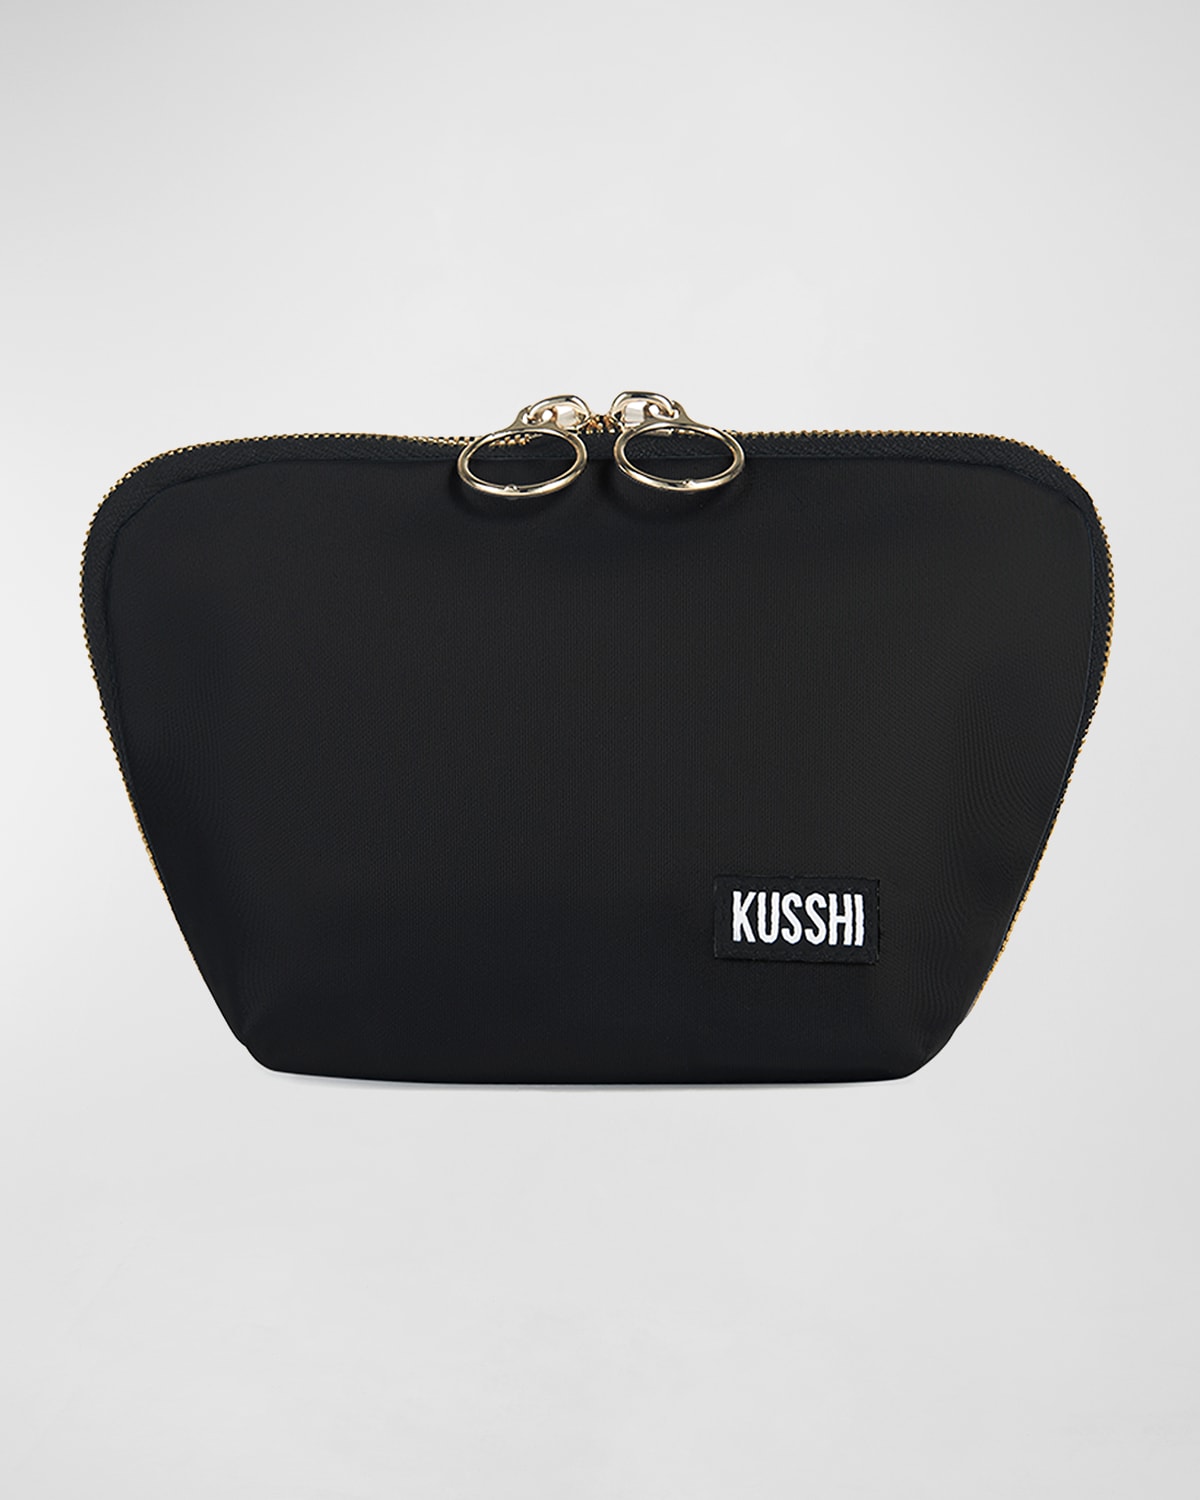 KUSSHI Everyday Makeup Bag